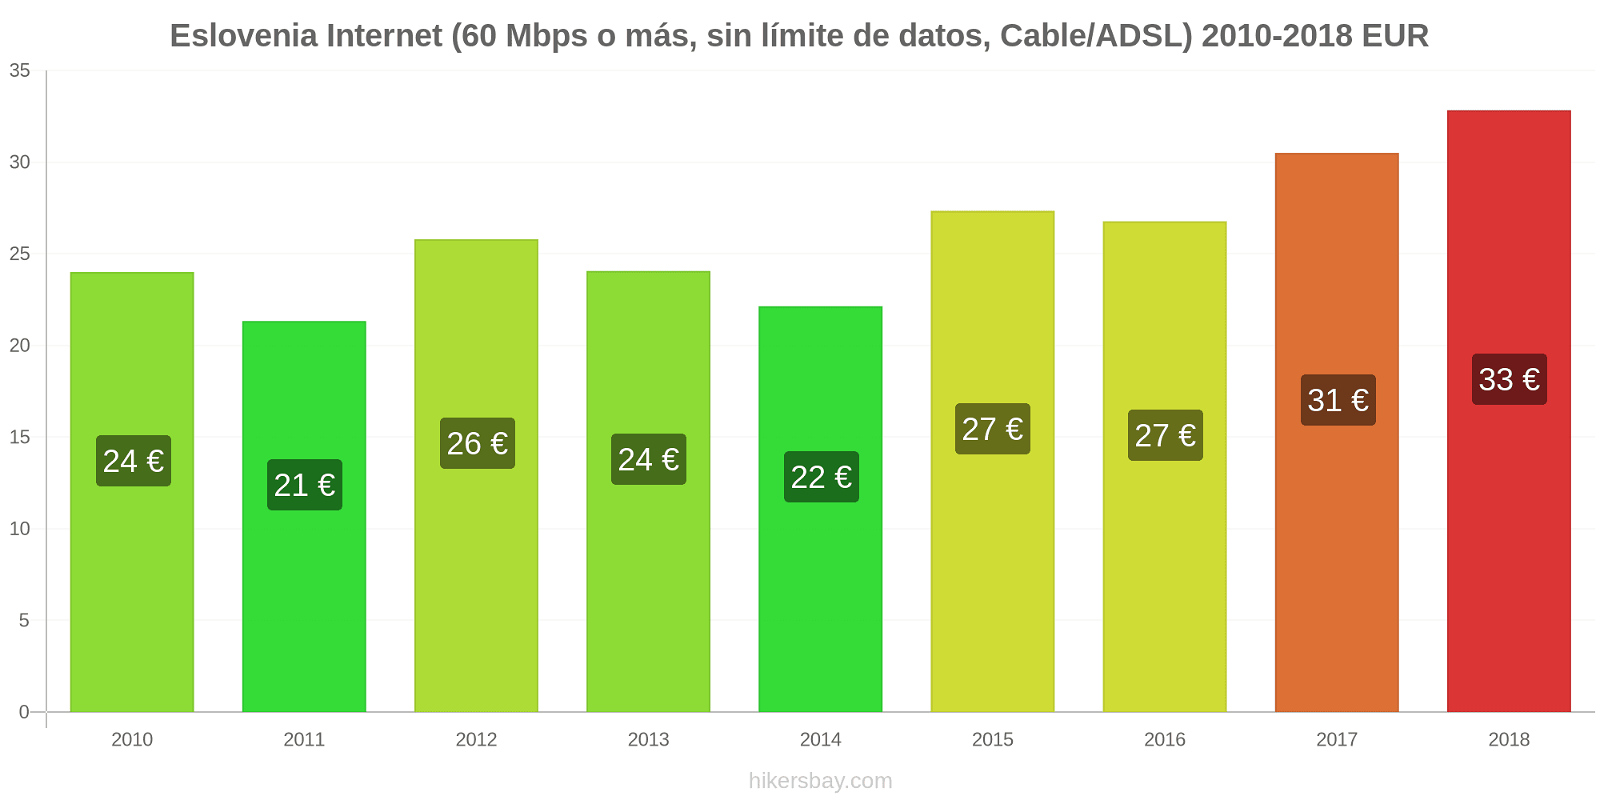 Eslovenia cambios de precios Internet (60 Mbps o más, datos ilimitados, cable/ADSL) hikersbay.com